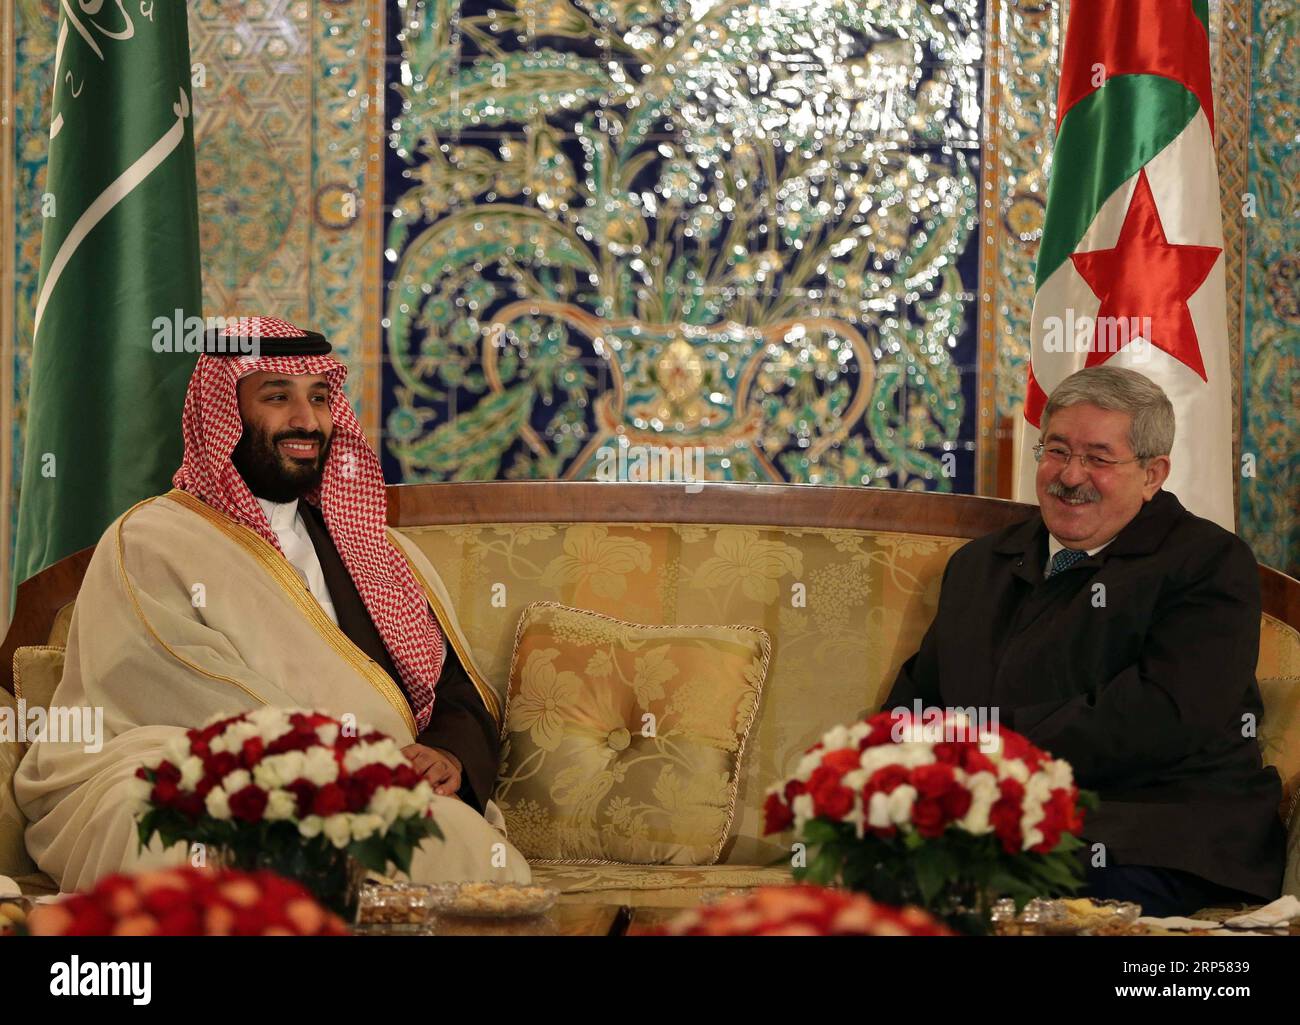 (181202) -- ALGER, 2 déc. 2018 () -- le prince héritier saoudien Mohammed bin Salmane (à gauche) rencontre le Premier ministre algérien Ahmed Ouyahia à son arrivée à Alger, Algérie, le 2 décembre 2018. Dimanche, le prince héritier saoudien Mohammed bin Salmane a donné le coup d'envoi d'une visite officielle de deux jours en Algérie avec des membres du gouvernement saoudien, des hommes d'affaires et des personnalités éminentes. () ALGÉRIE-ALGER-PRINCE HÉRITIER SAOUDIEN-VISIT XINHUA PUBLICATIONXNOTXINXCHN Banque D'Images